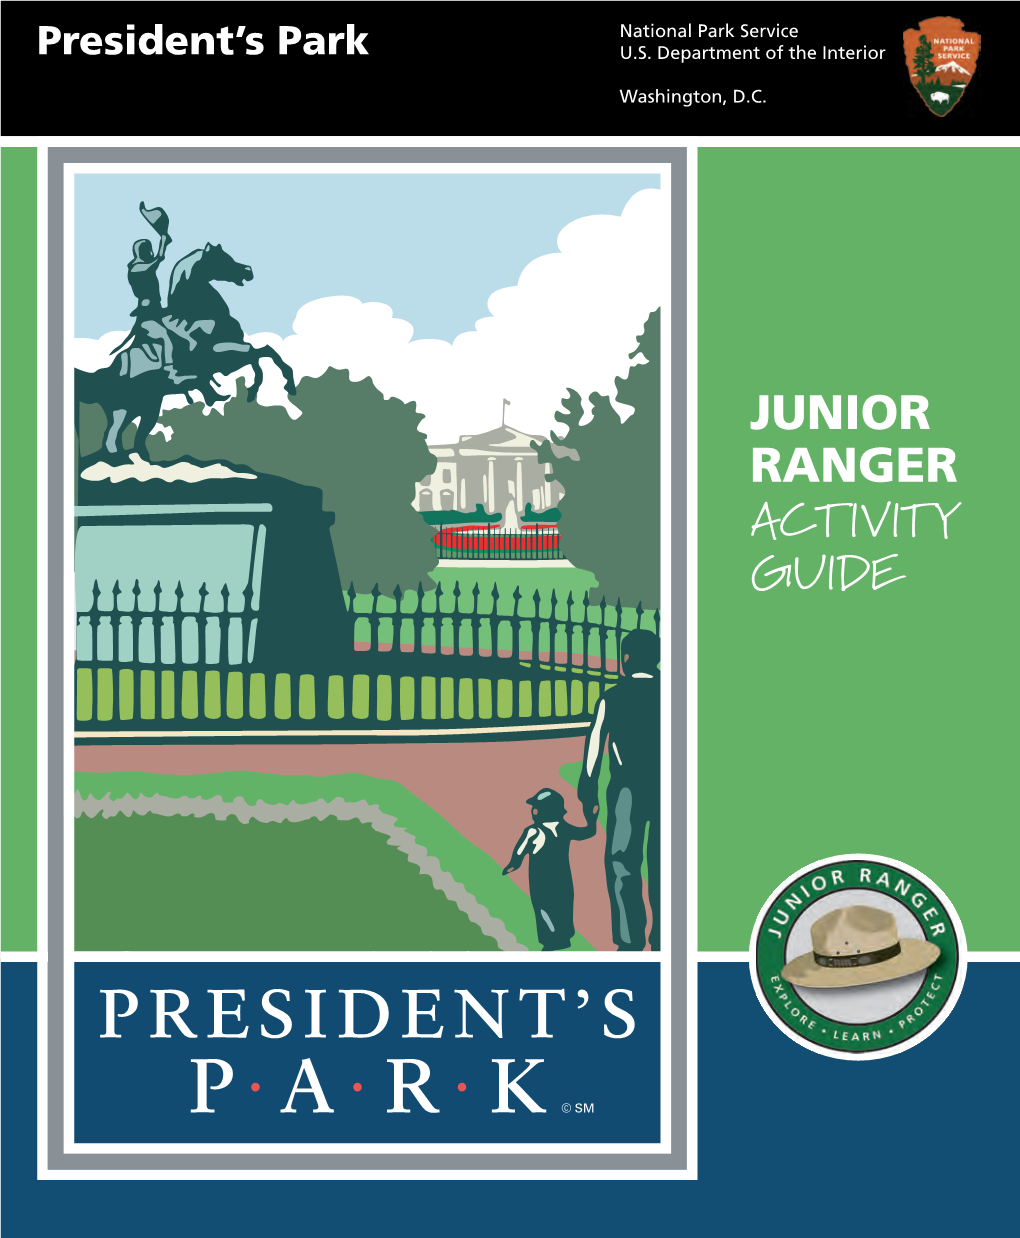 President's Park Junior Ranger